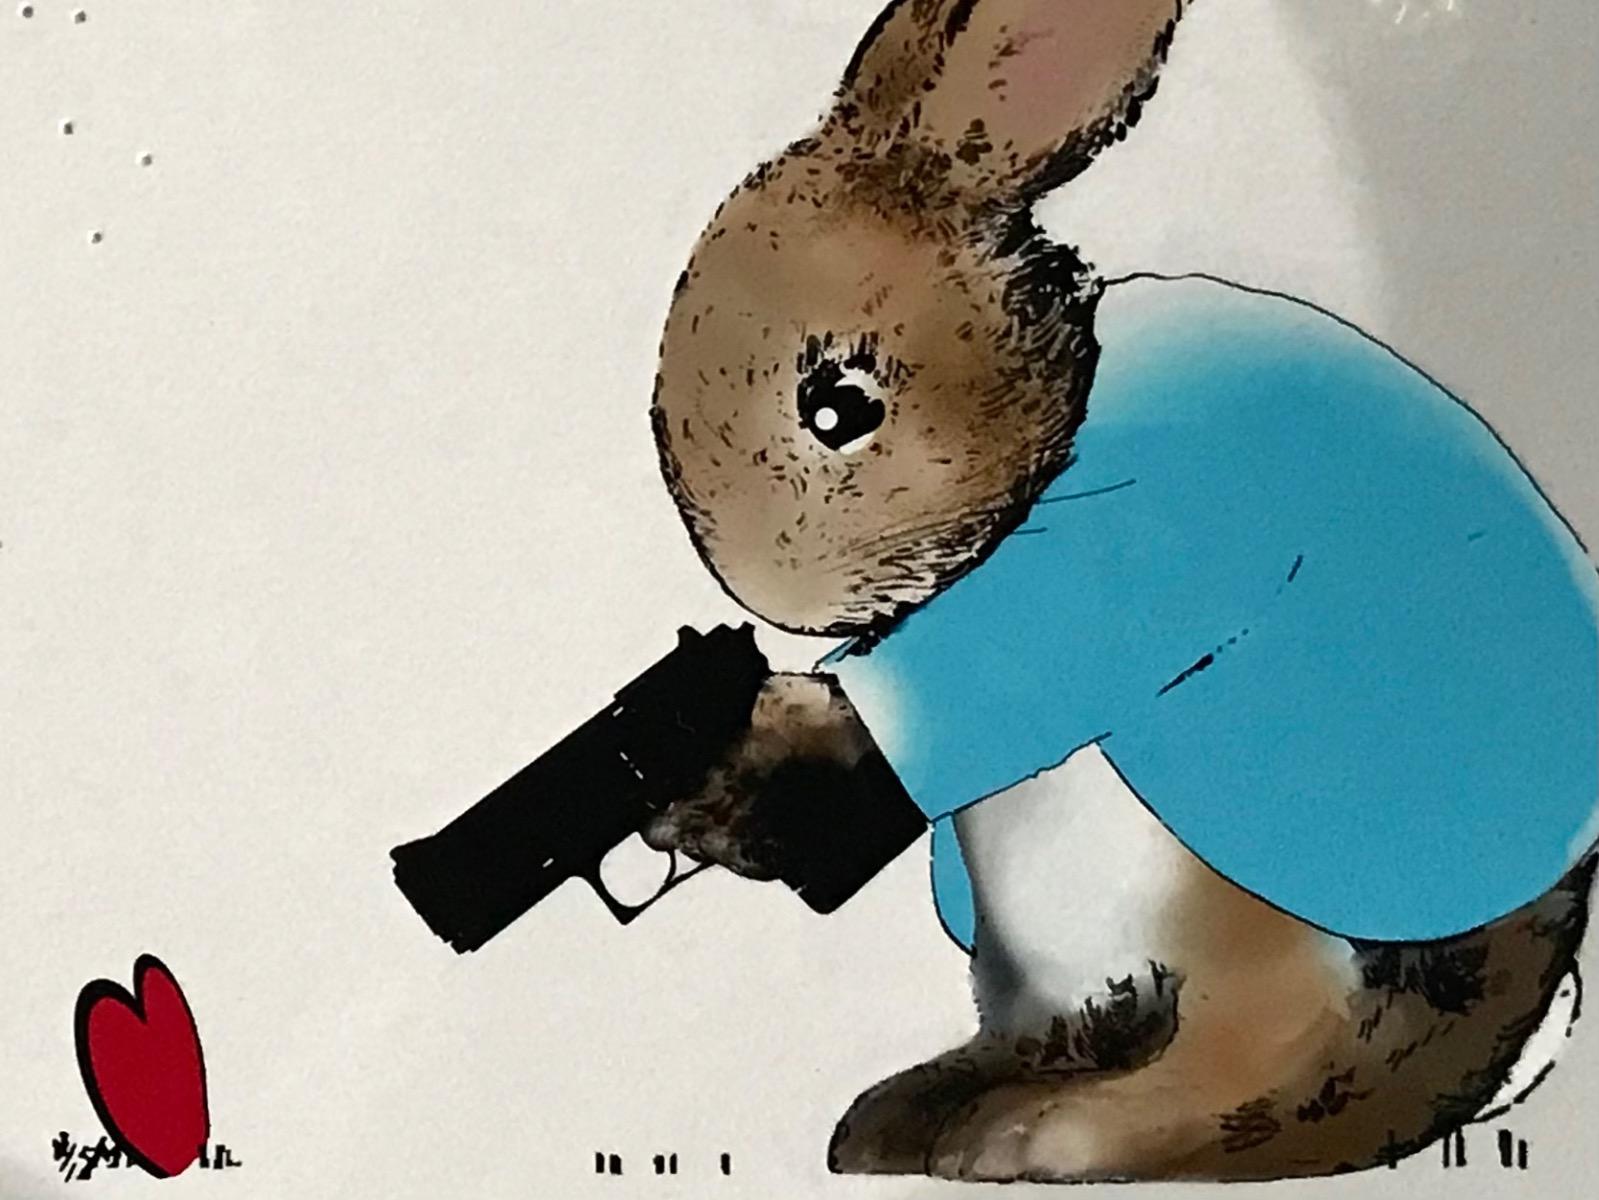 Die Serie Rural Resistance - Freeze! von Harry Bunce besteht aus blauen, roten und braunen Tönen, die ein Kaninchen zeigen, das eine Pistole auf ein rotes Herz richtet, während im Hintergrund die Schüsse auf dem Blatt zu hören sind.

Zusätzliche